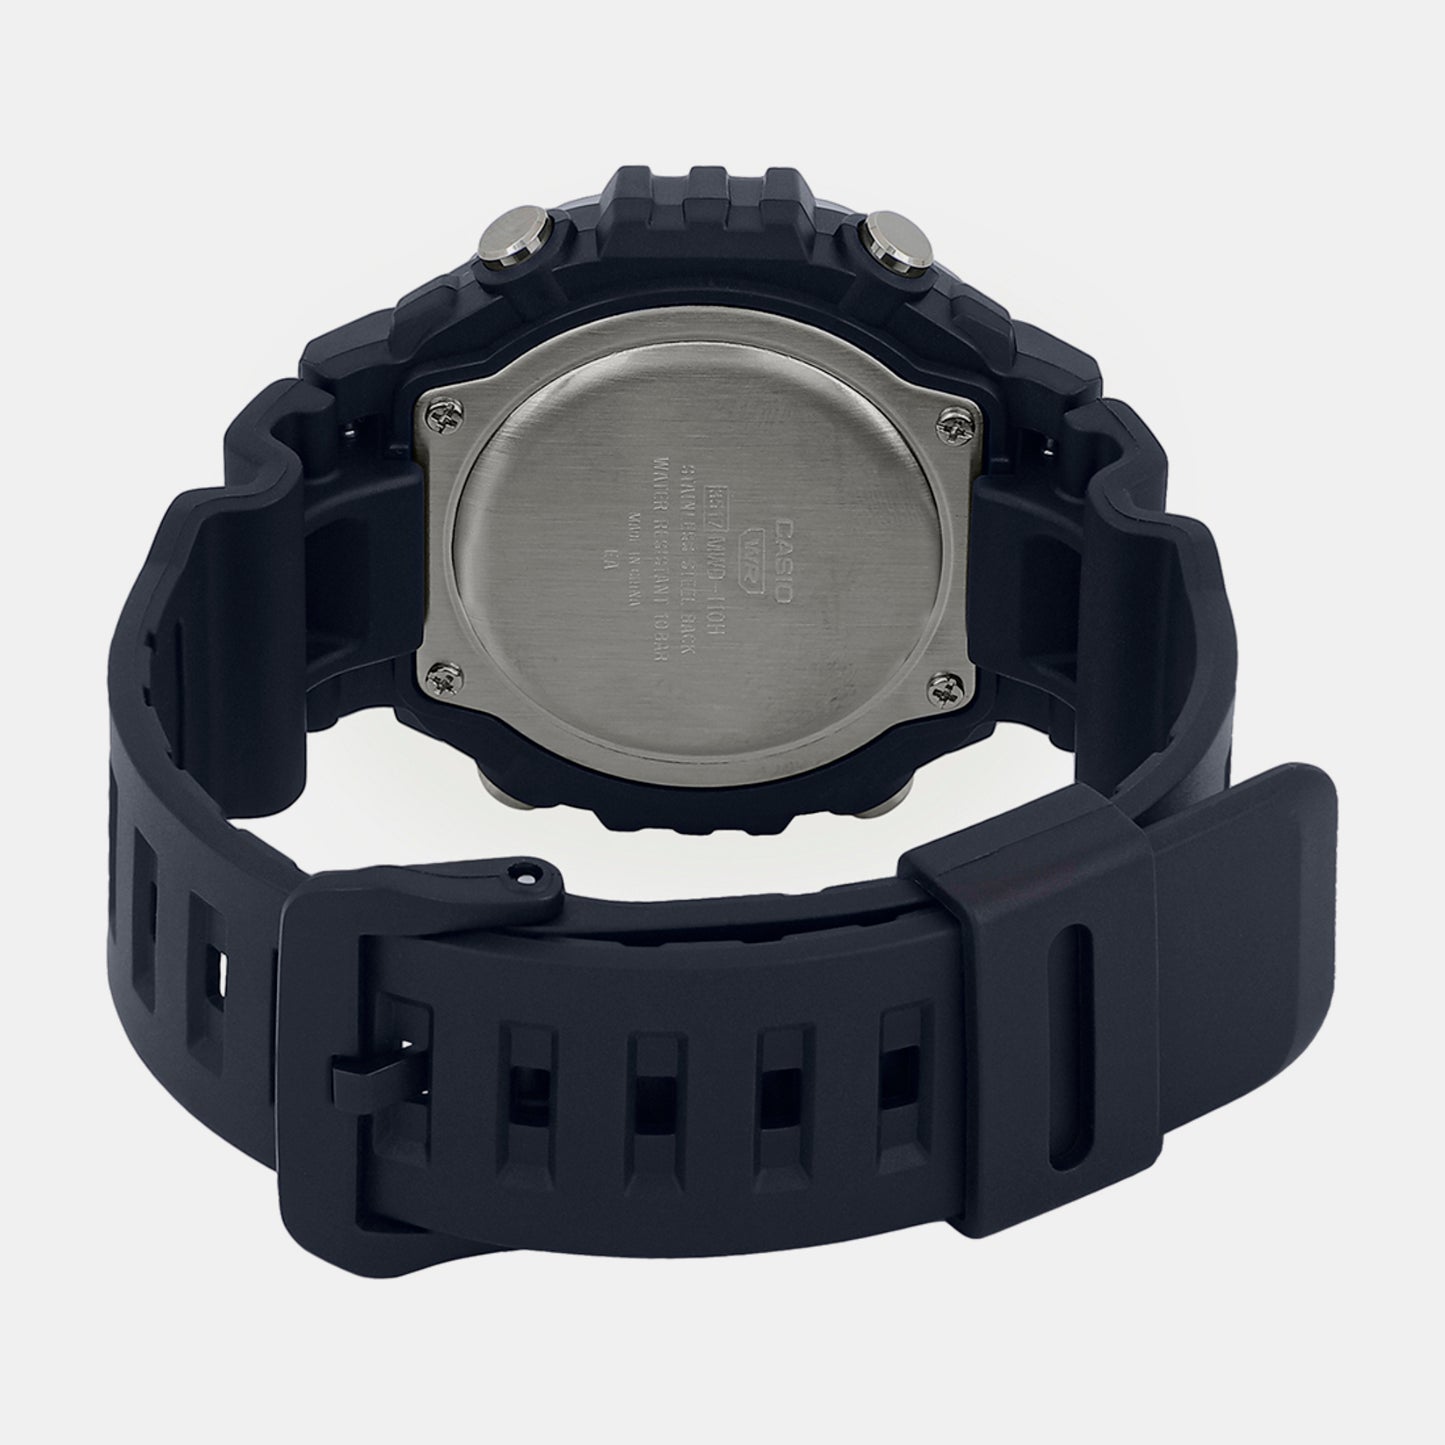 Male Black Digital Resin Watch D300